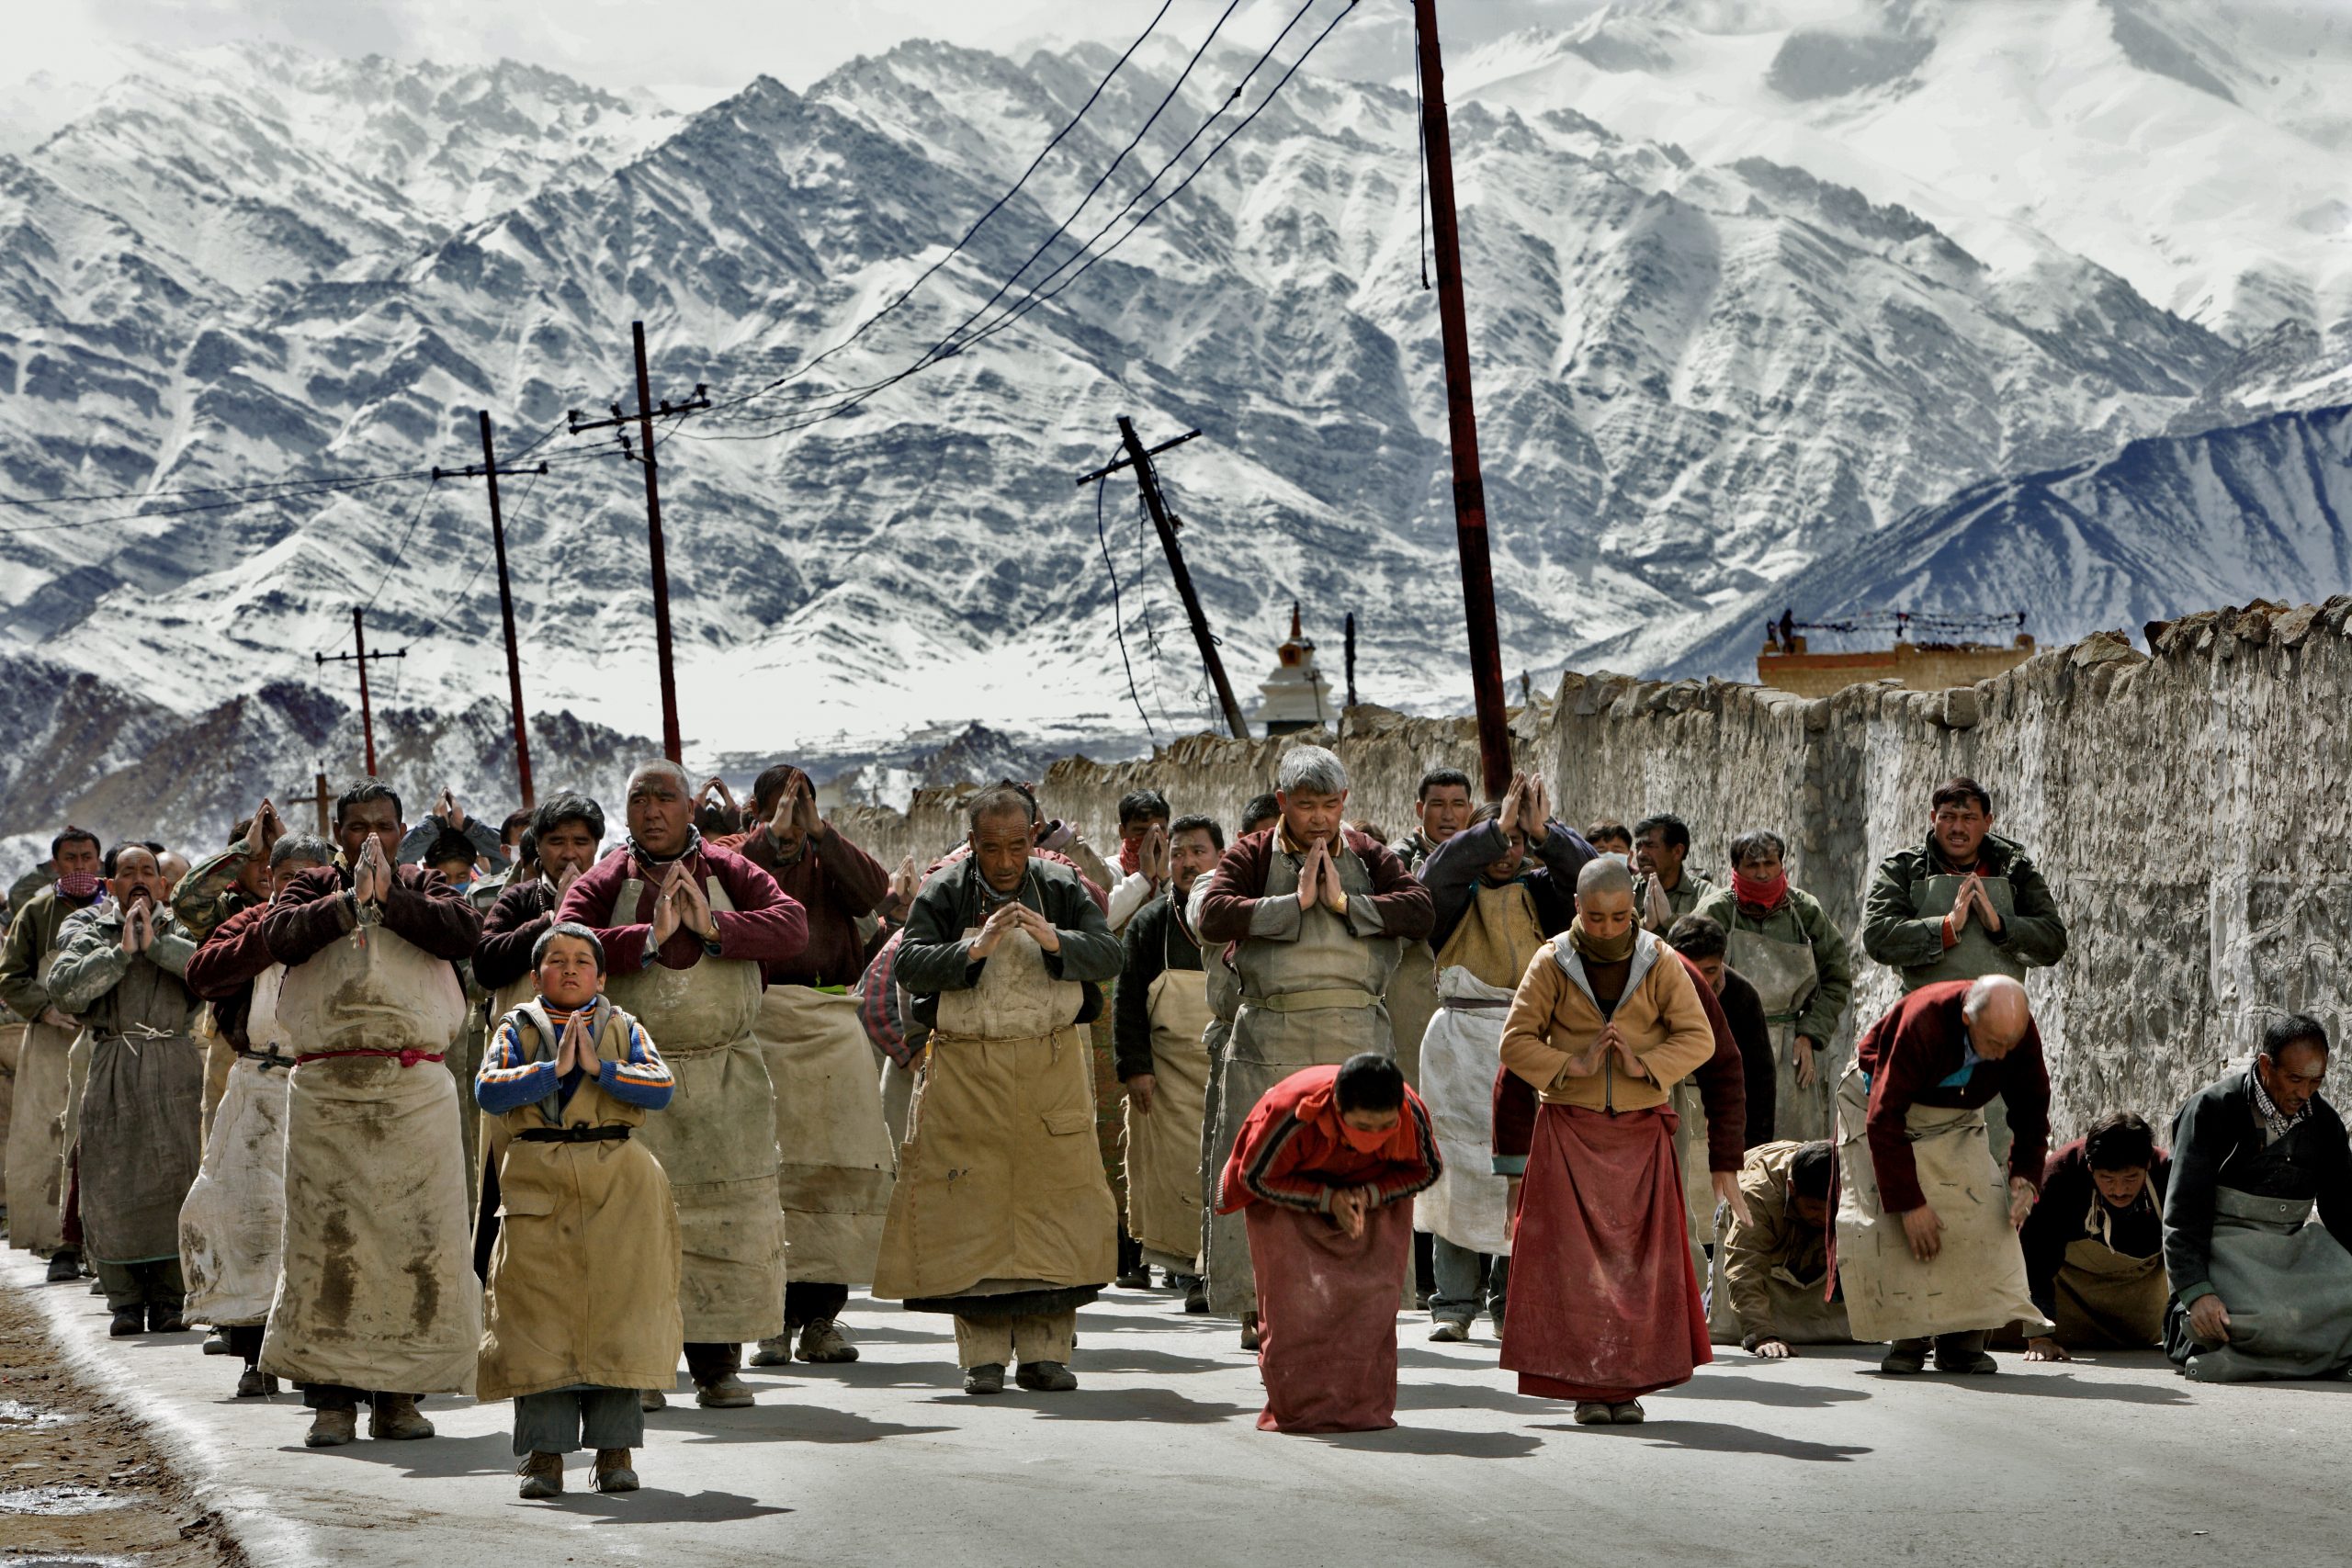 Ladakh - India - Gli abitanti di Leh, capitale della regione del Ladakh, stanno pregando durante un Go-chak (processione buddista). ©Bruno Zanzottera